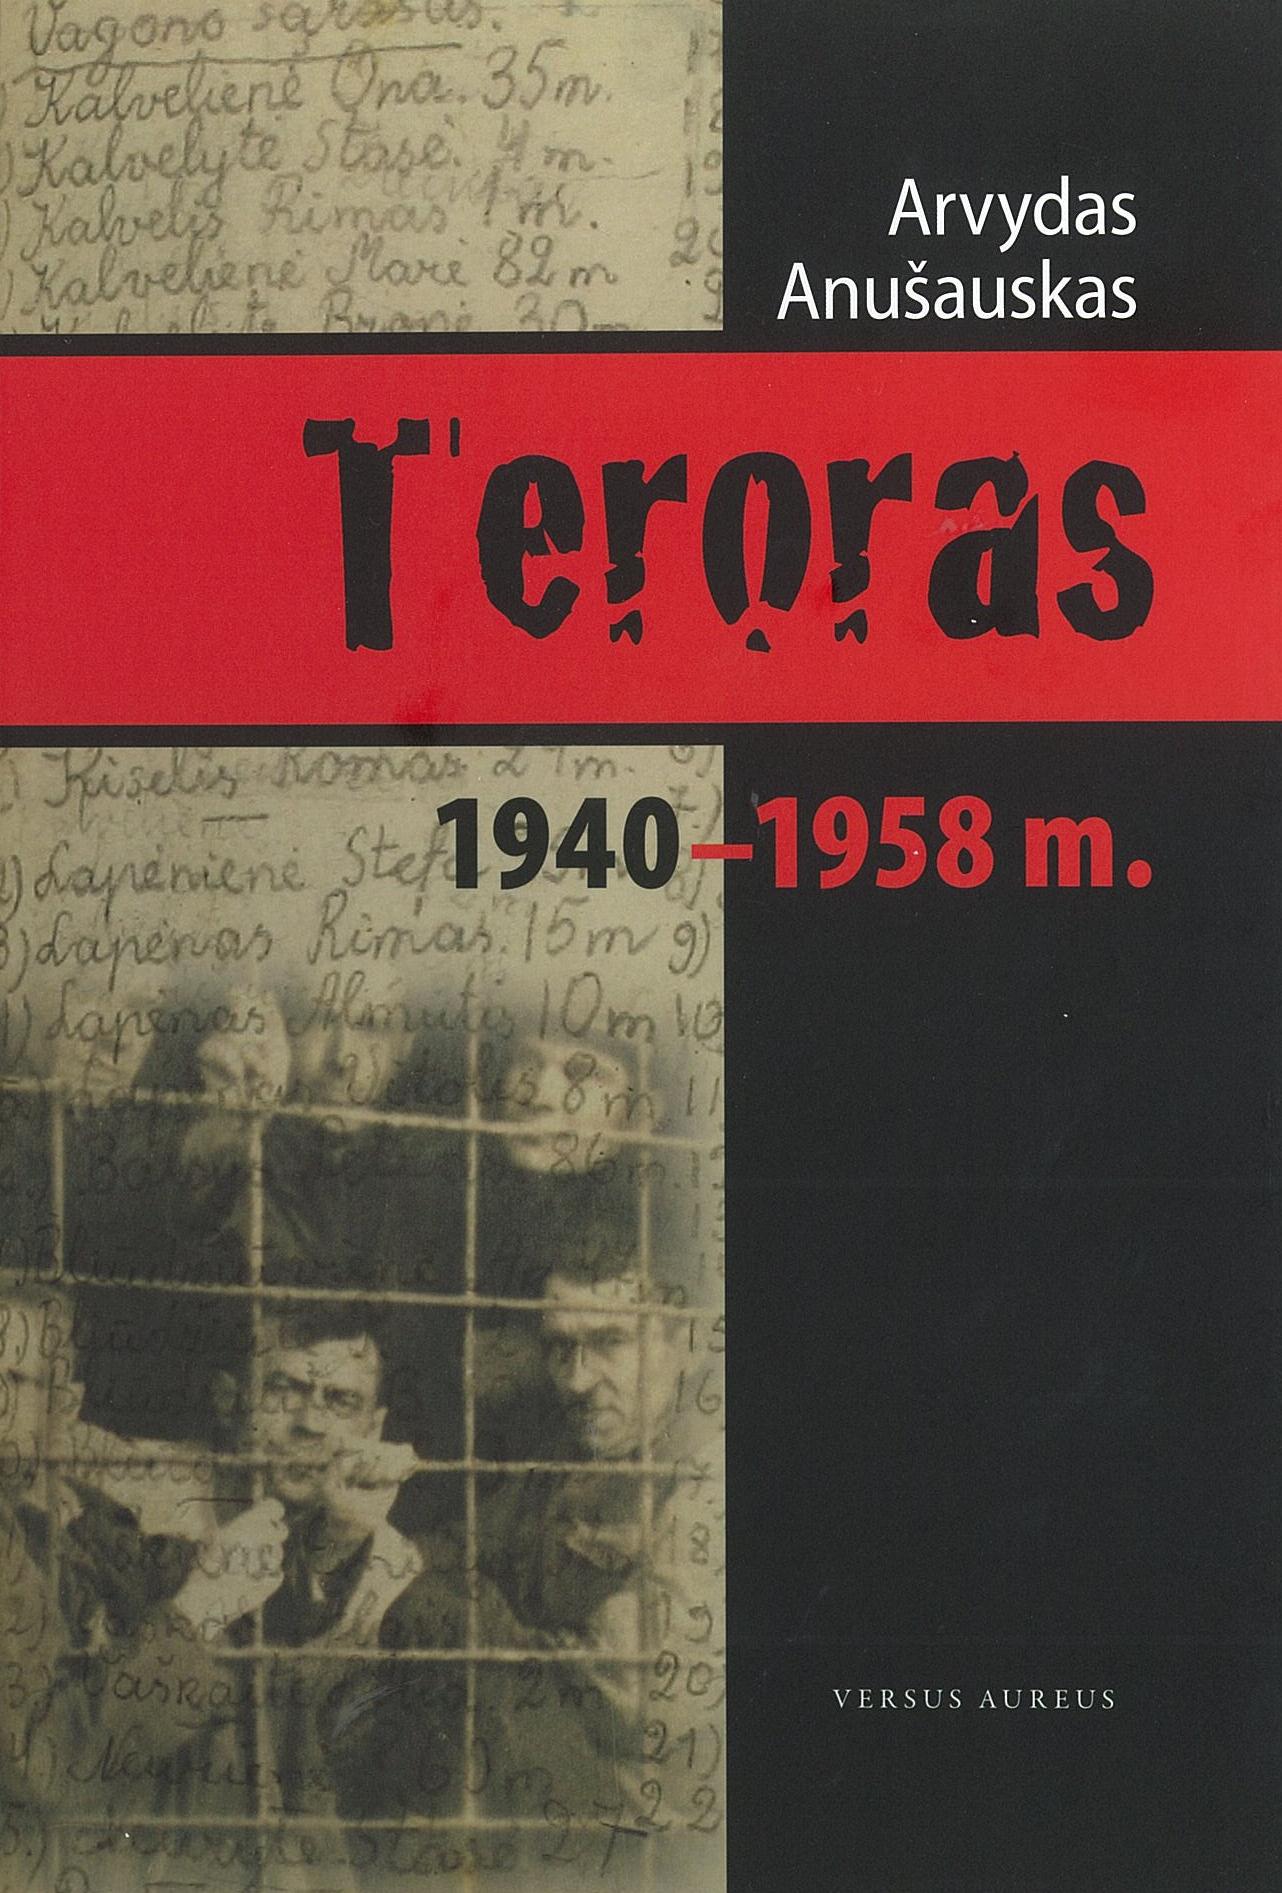 TERORAS 1940-1958 m.